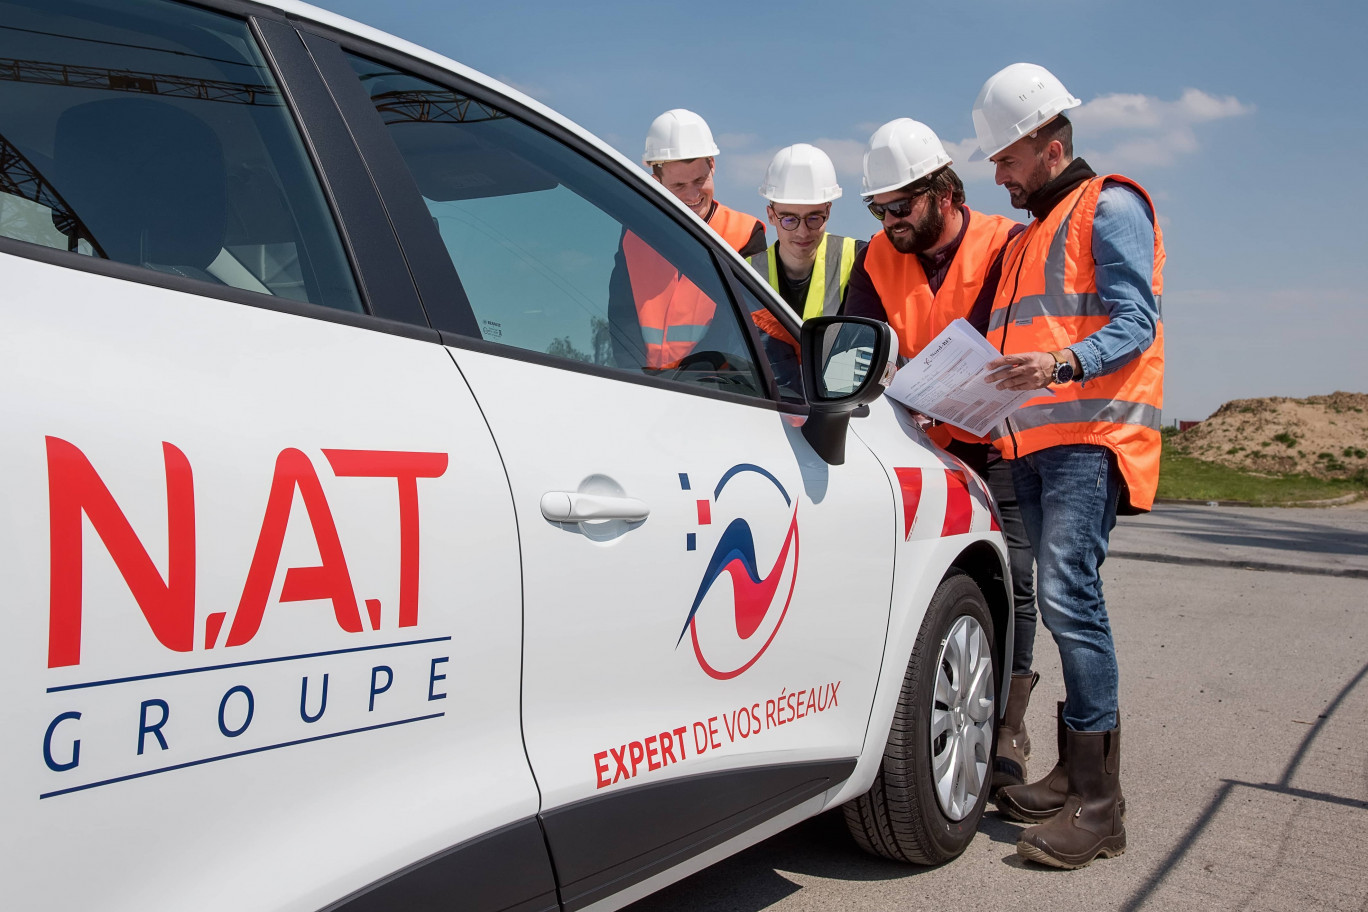 Le Groupe N.A.T, Champion de la croissance dans les Hauts-de-France